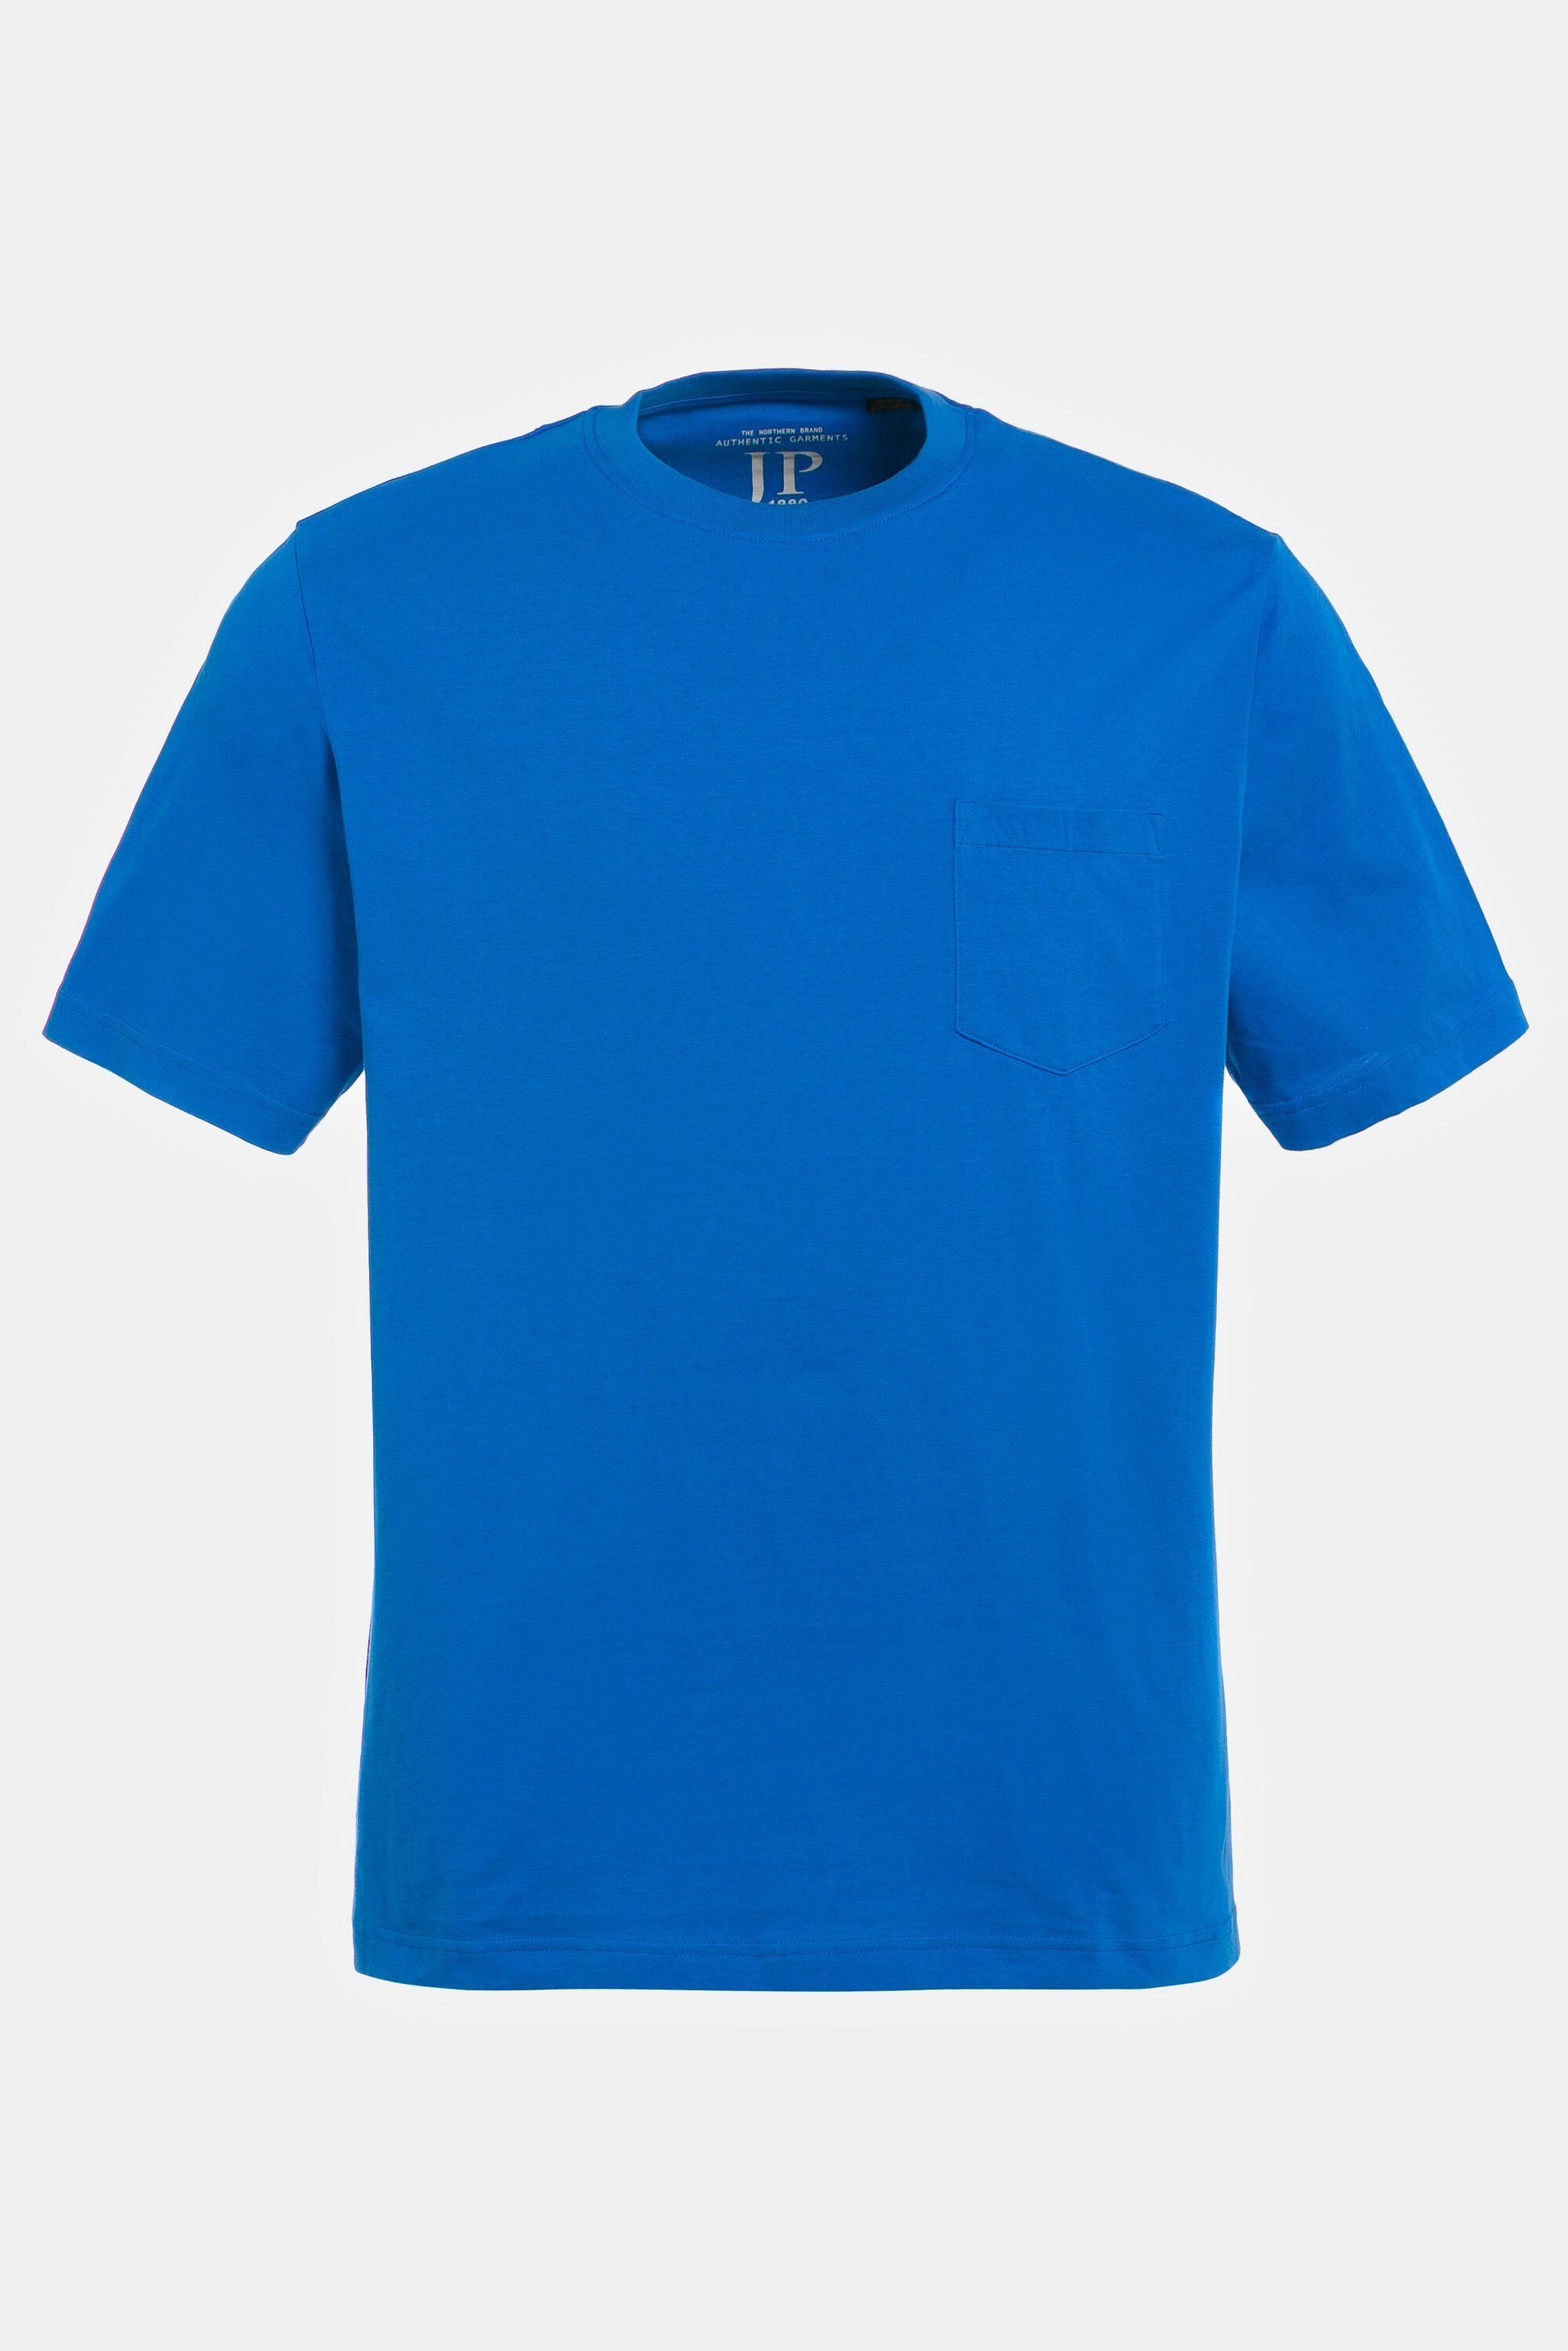 T-Shirt T-Shirt Halbarm clematisblau Brusttasche JP1880